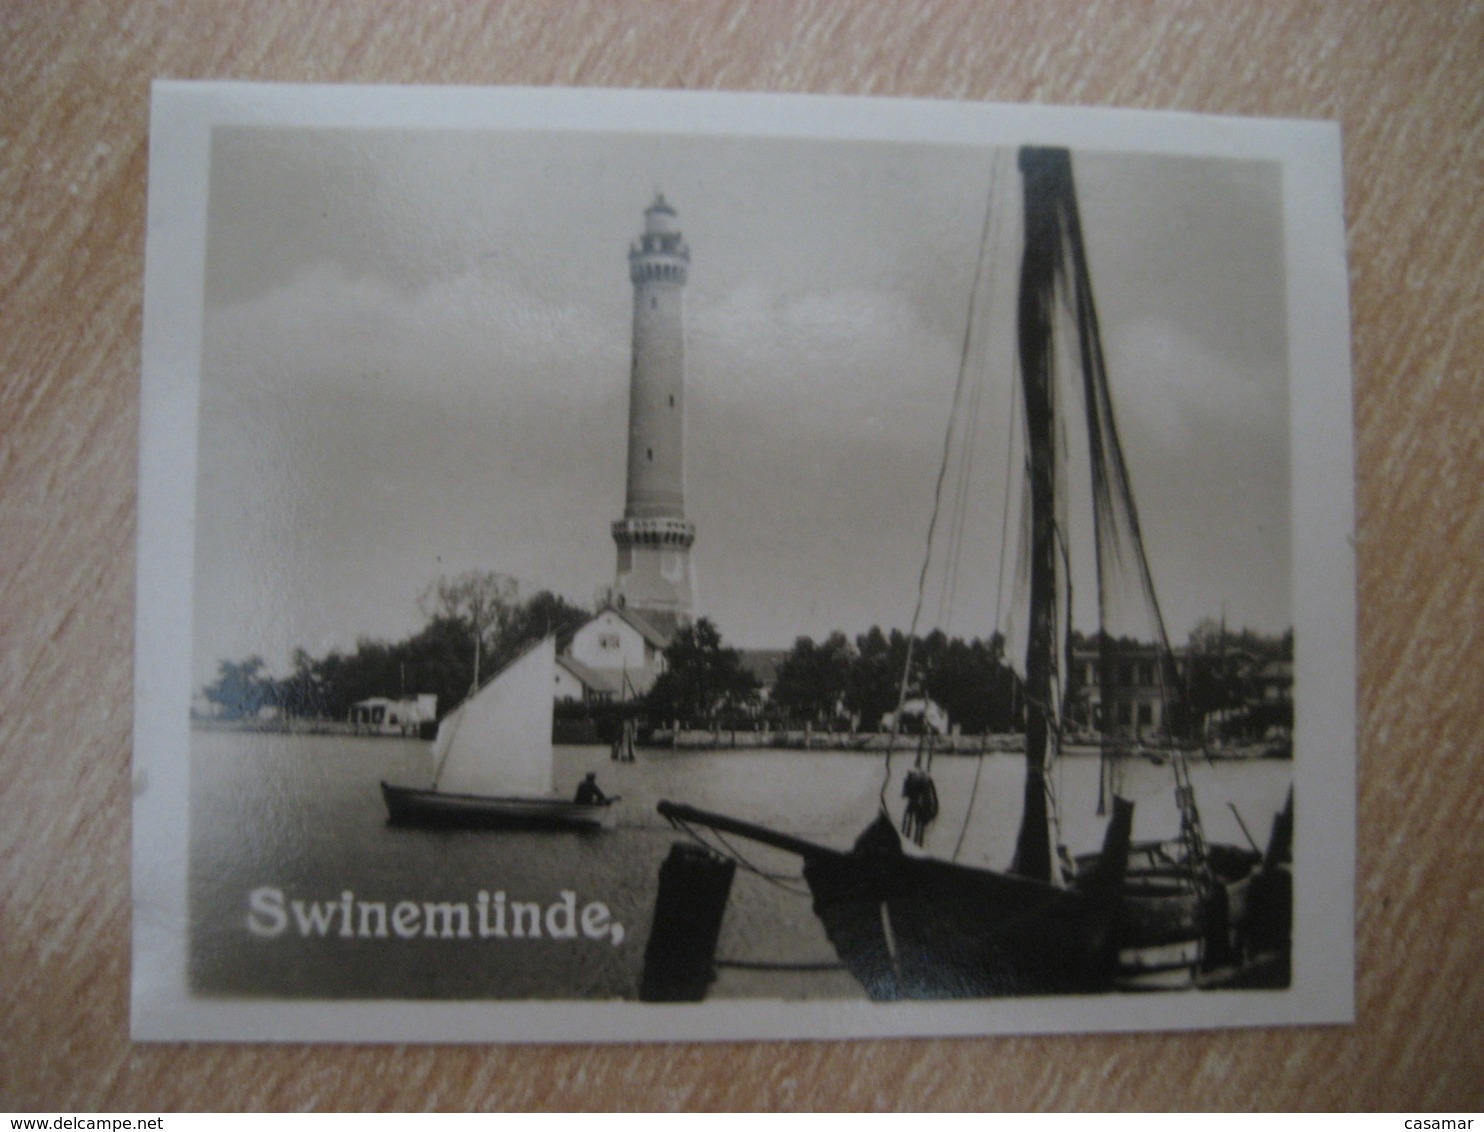 SWINEMUNDE Leuchtturm Lighthouse Phare Bilder Card Photo Photography (4x5,2cm) Deutsche Kuste Coast GERMANY 30s Tobacco - Ohne Zuordnung